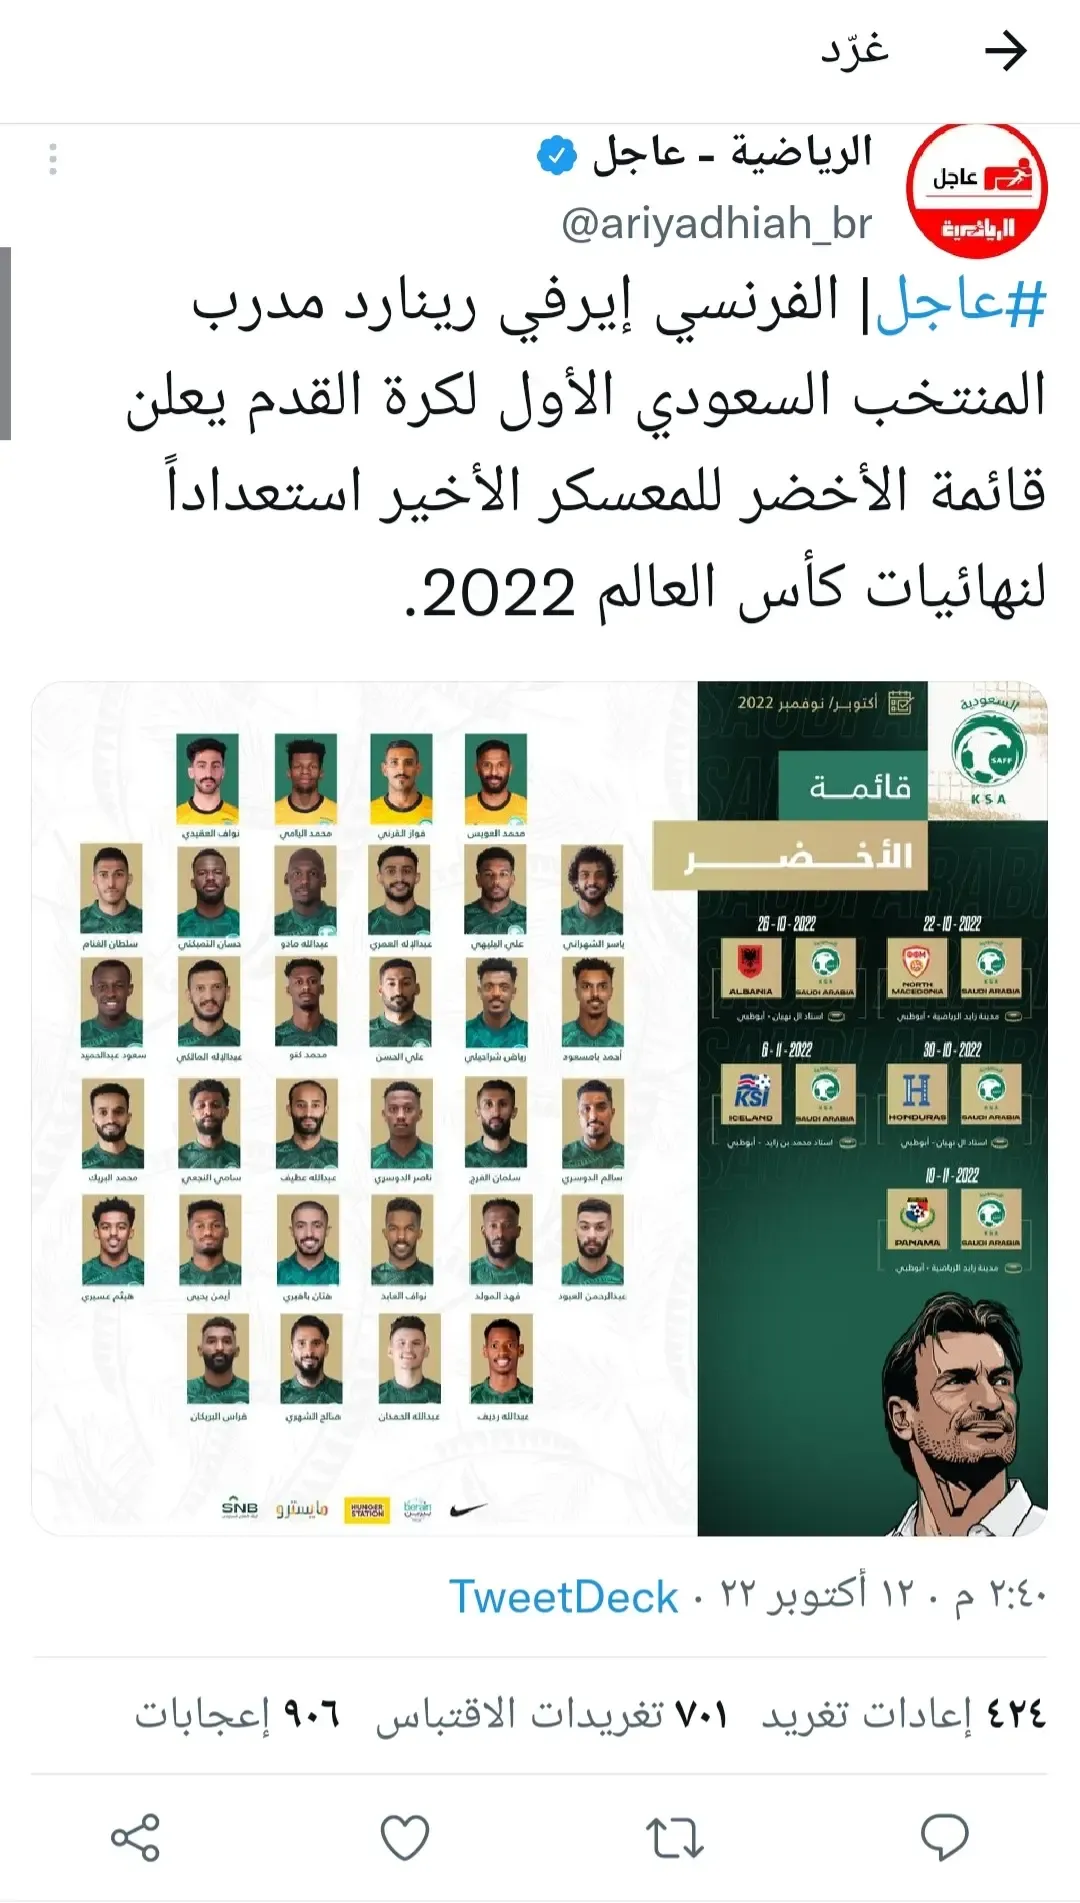 تشكيلة مدرب المنتخب السعودي لينارد في كأس العالم قطر 2022 امام الارجنتين.